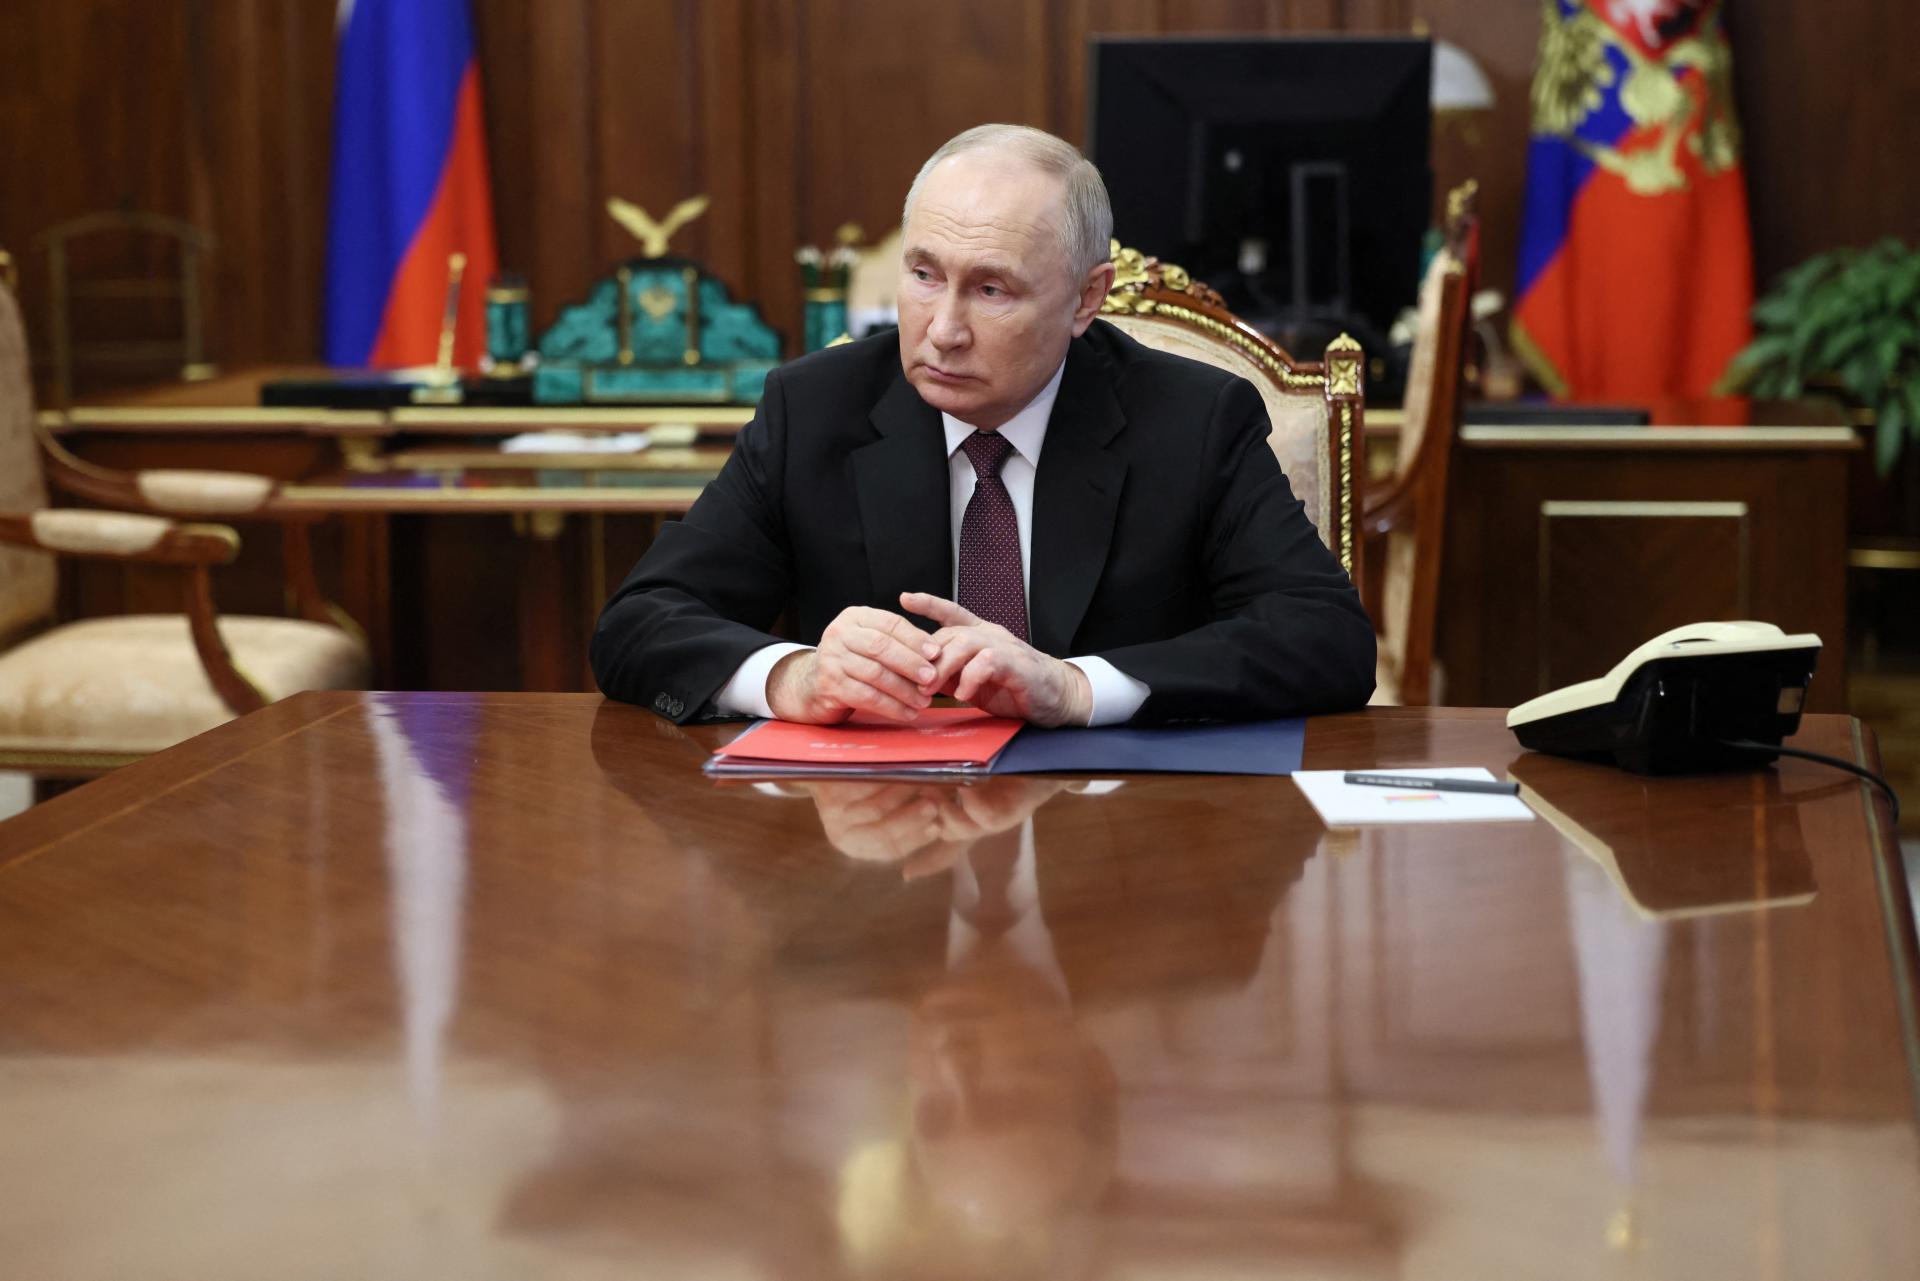 Putin sa stretne na summite v Kazachstane so Si Ťin-pchingom a Erdoganom